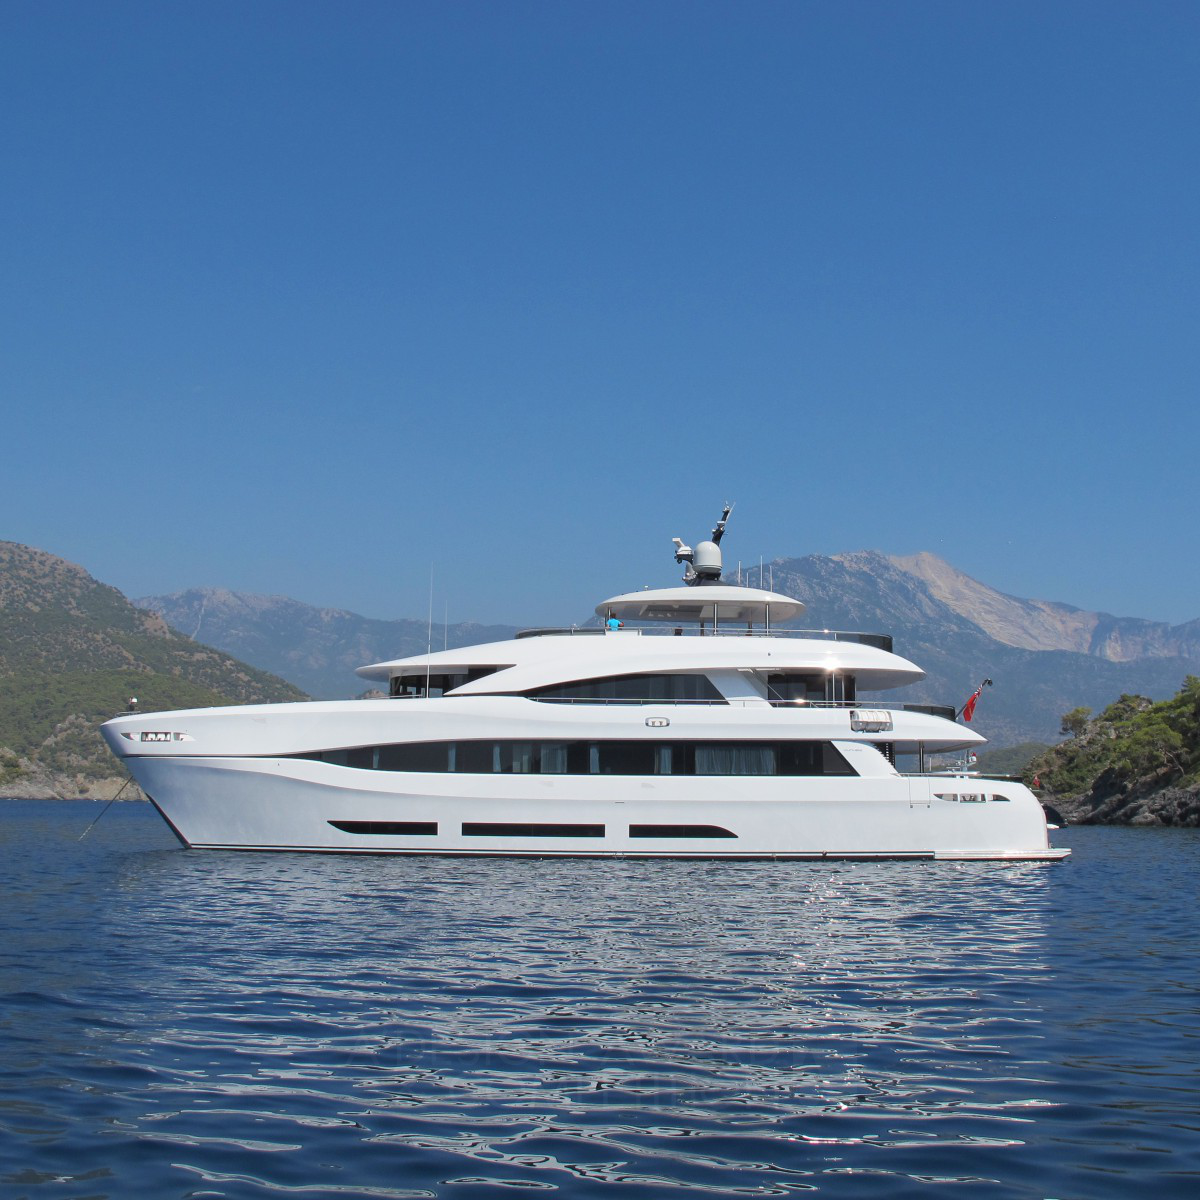 Curvelle quaranta luxury power catamaran superyacht